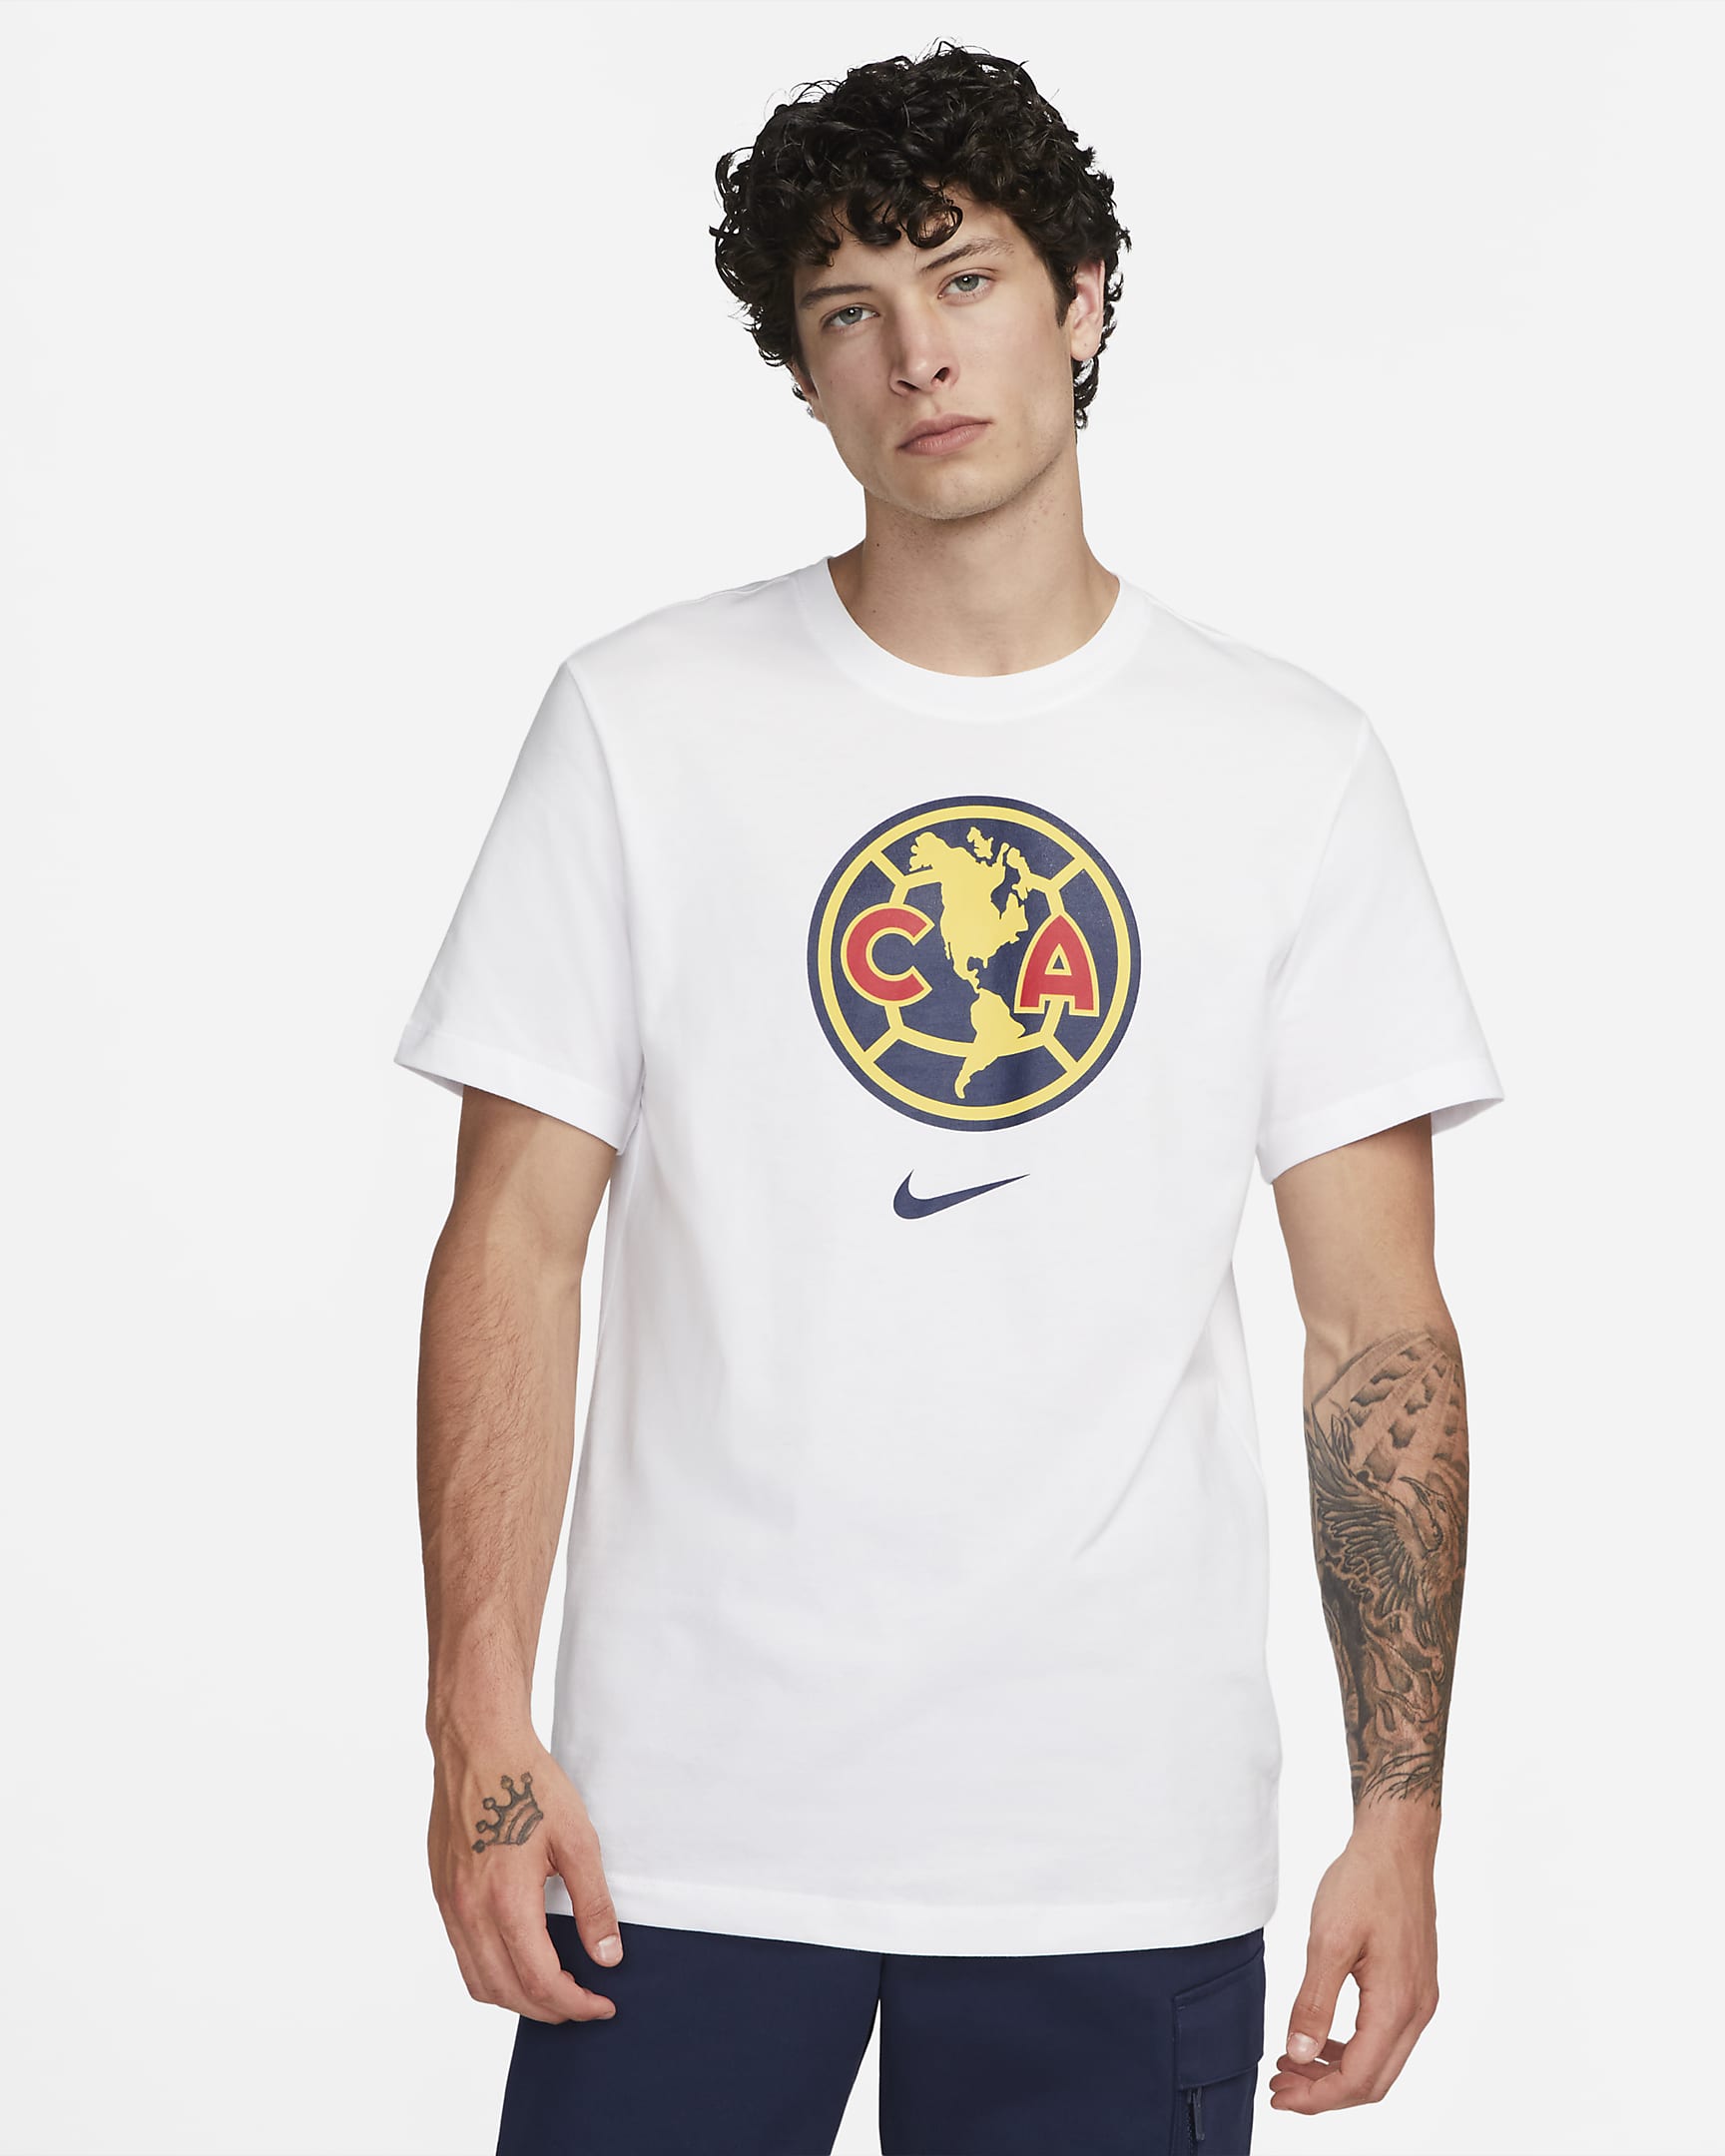 Club América Crest Men's Nike T-Shirt. Nike.com